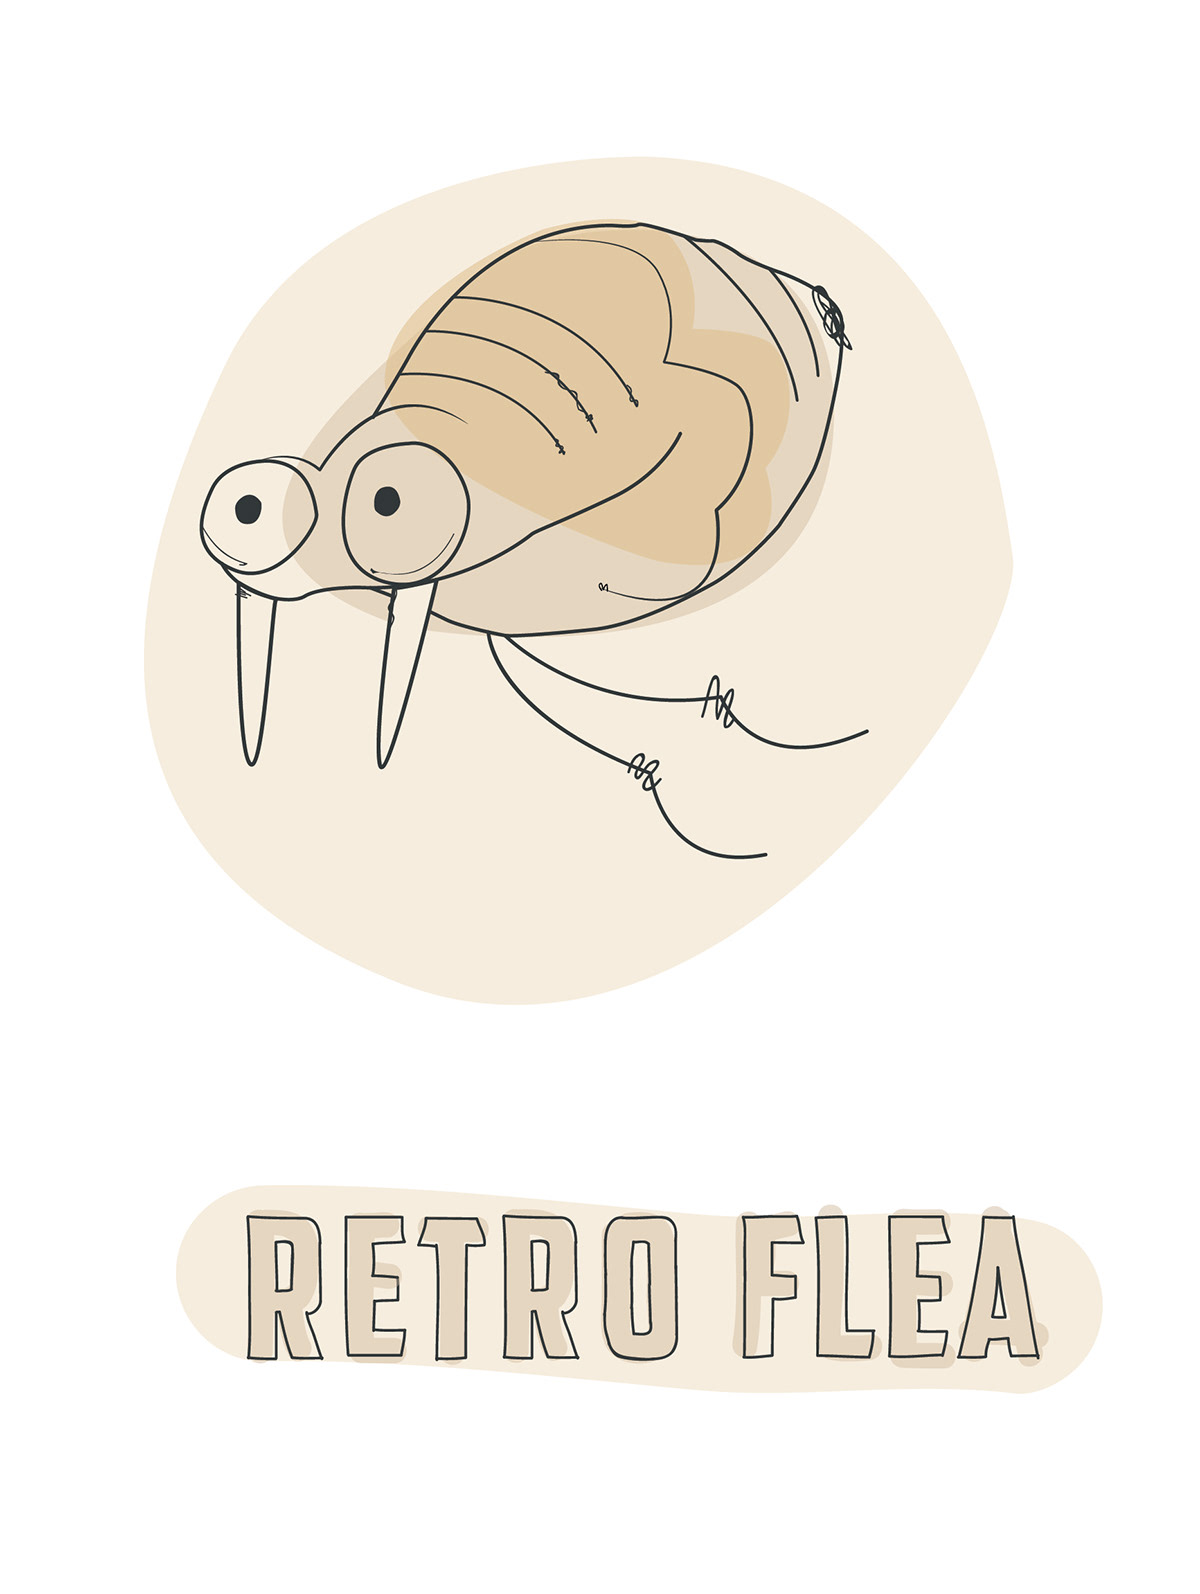 flea flea market market vintage Retro